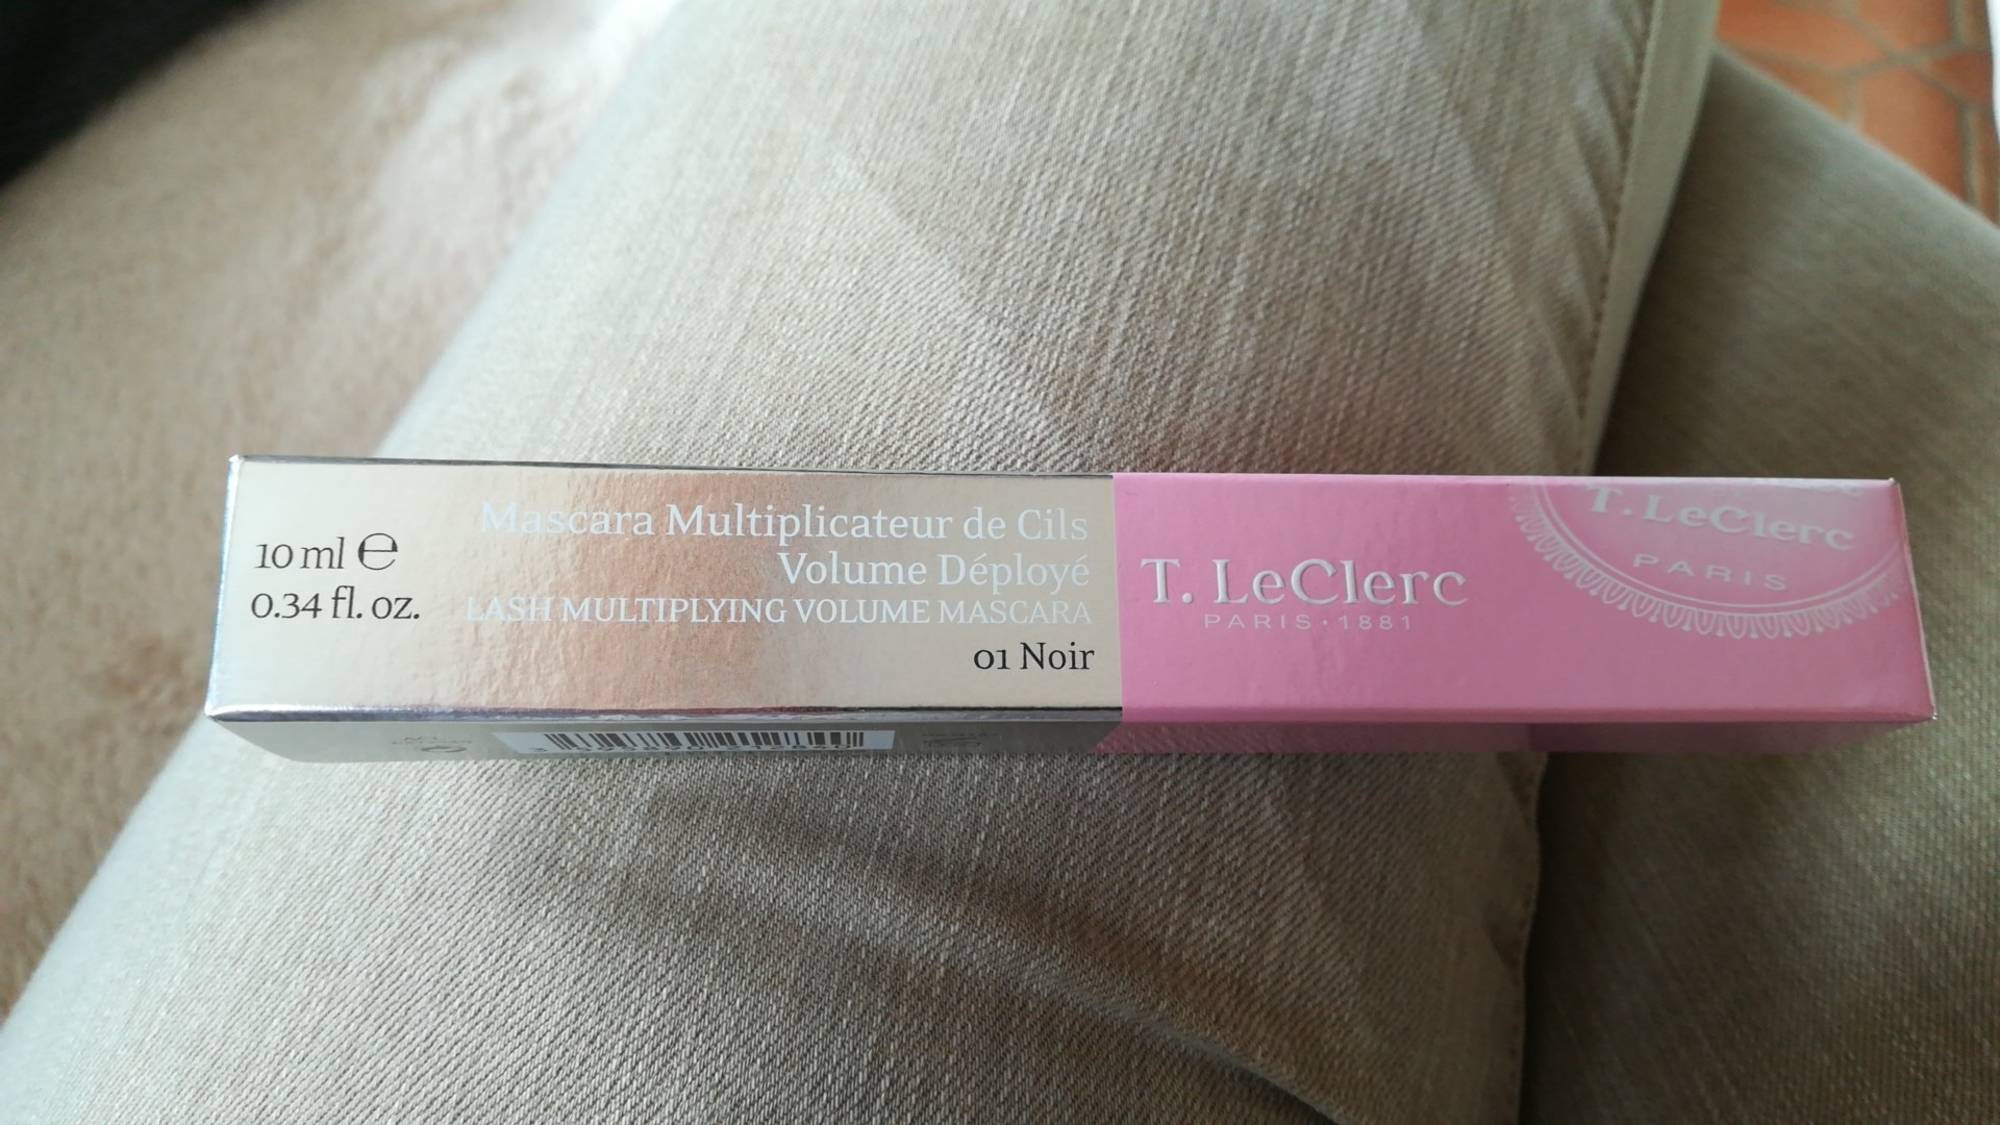 T. LECLERC PARIS - Mascara multiplicateur de cils - 01 noir